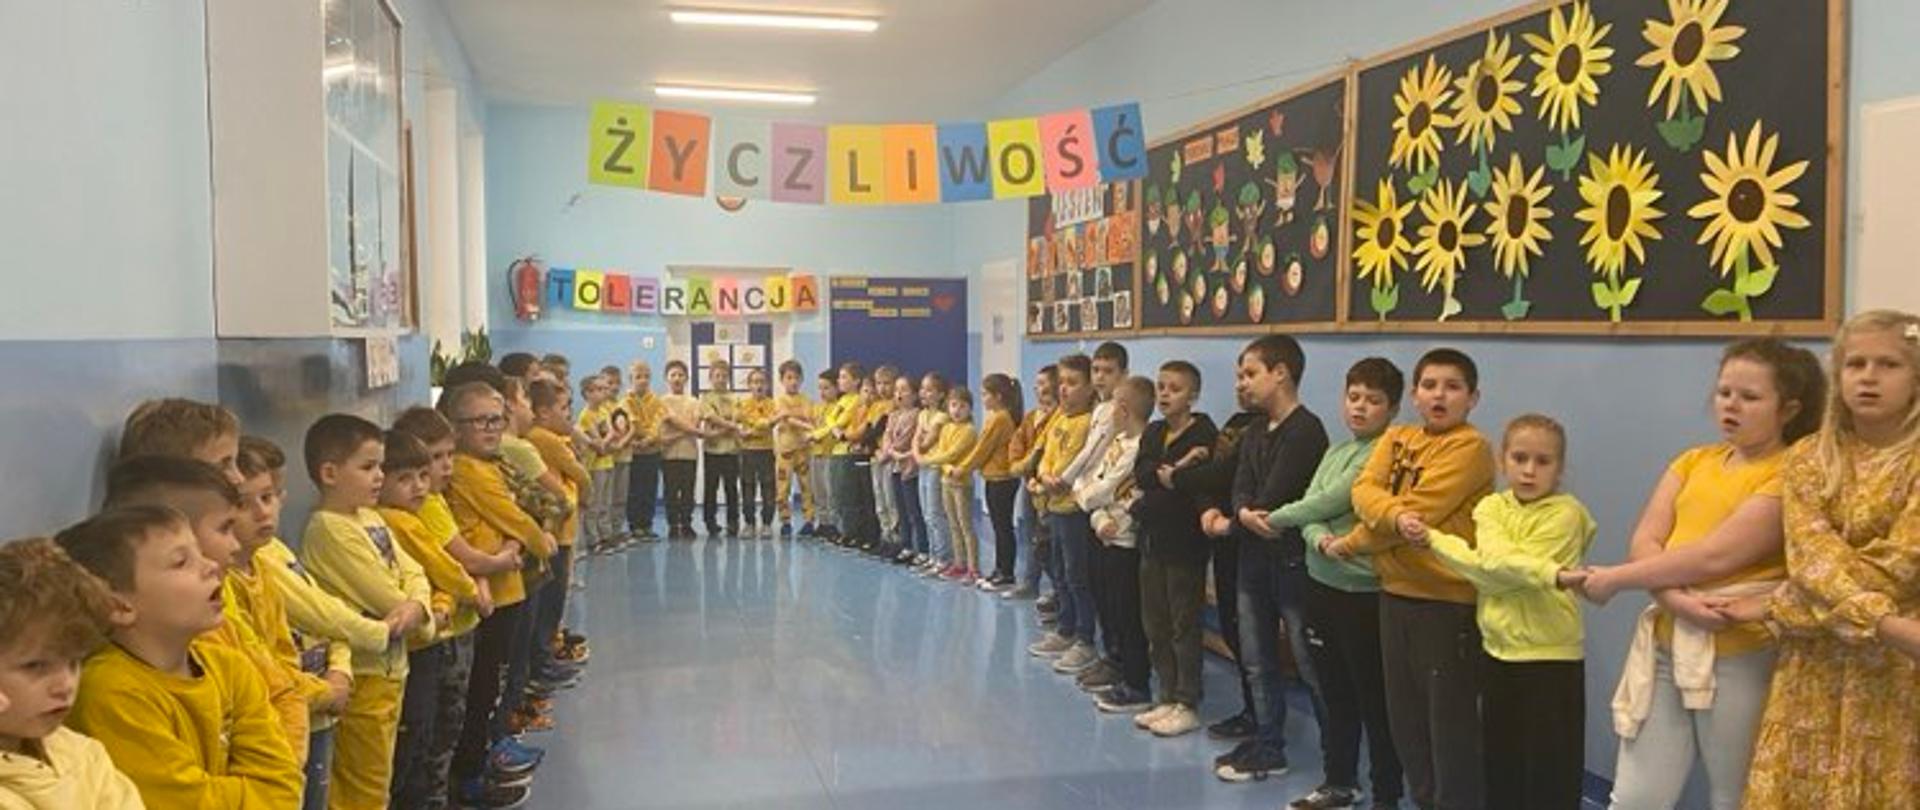 Na szkolnym korytarzu stoją uczniowie ubrani na żółto, trzymają się za ręce i tworzą krąg. U góry rozwieszone napisy: życzliwość, tolerancja. Z prawej strony na gazetce są żółte słoneczniki.